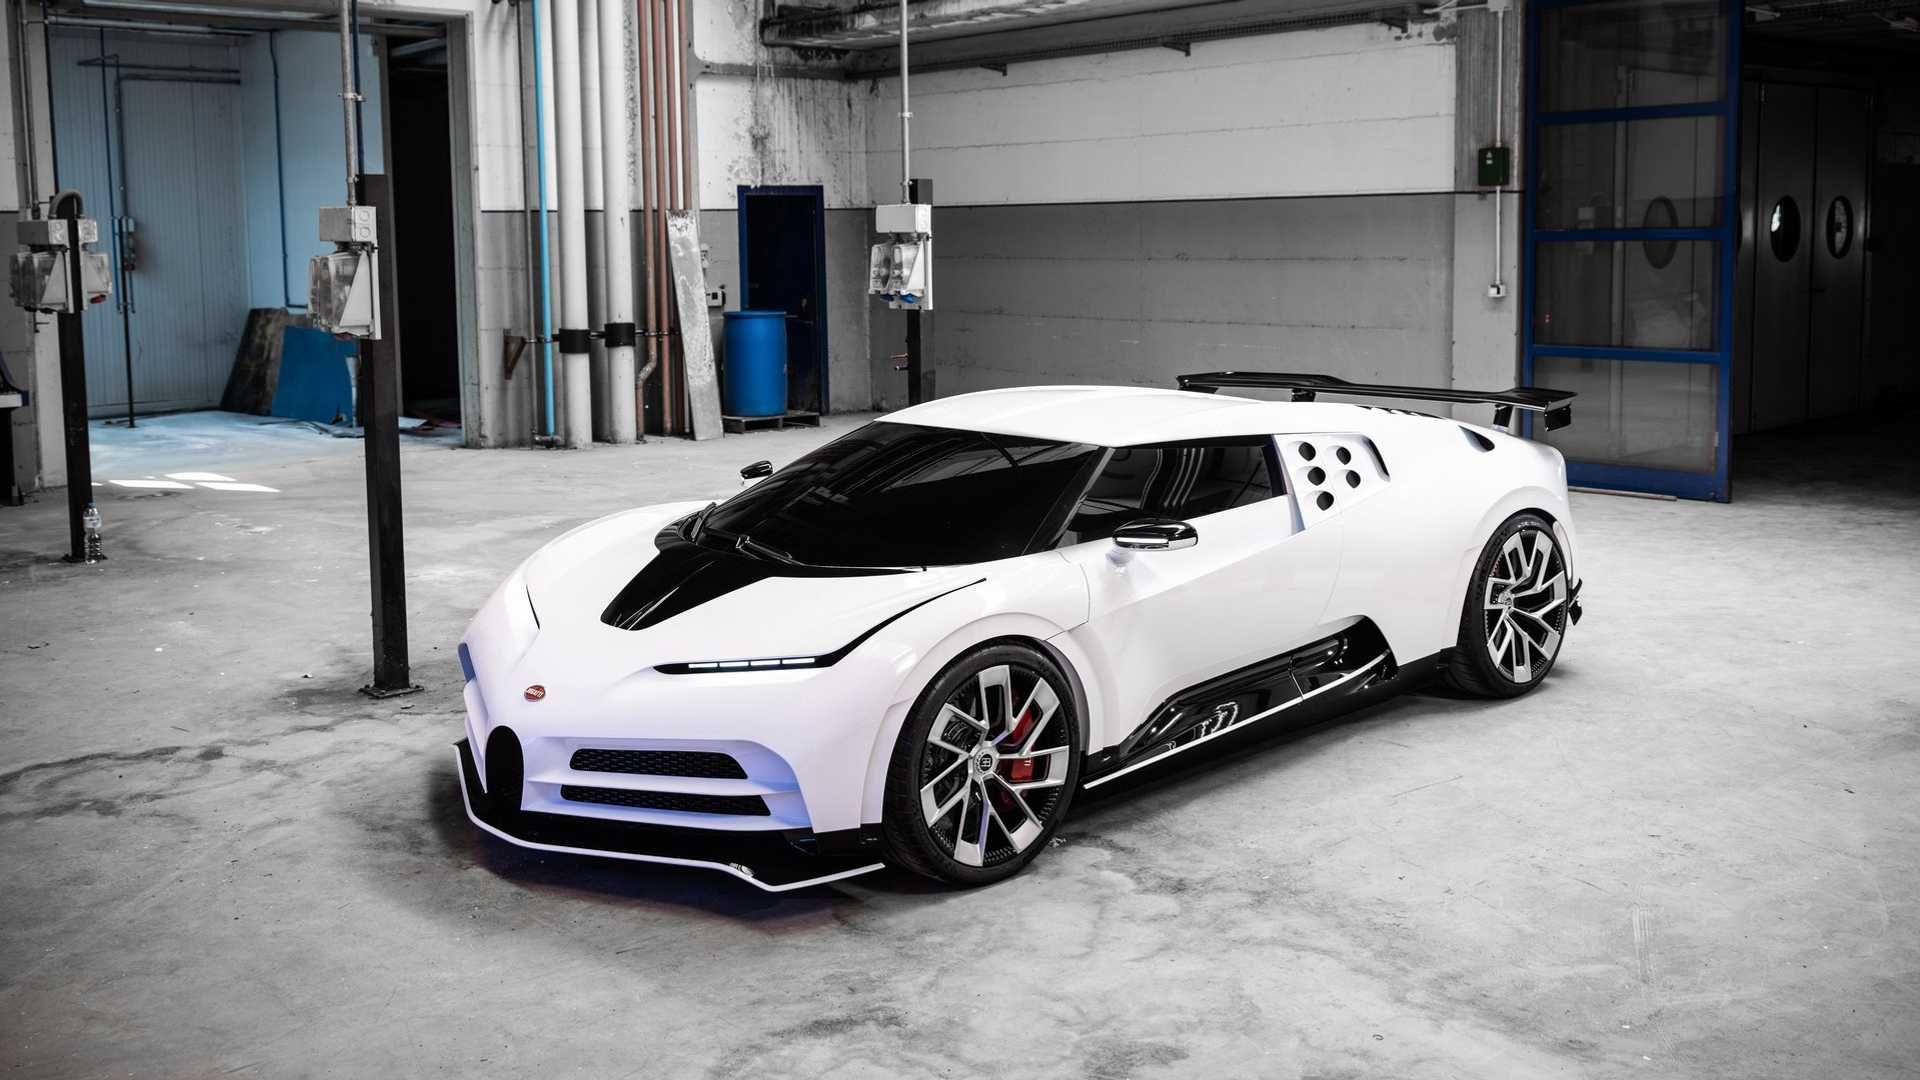 نمای اصلی ابرخودرو بوگاتی سنتودایچی / Bugatti Centodieci hypercar سفید رنگ در گاراژ